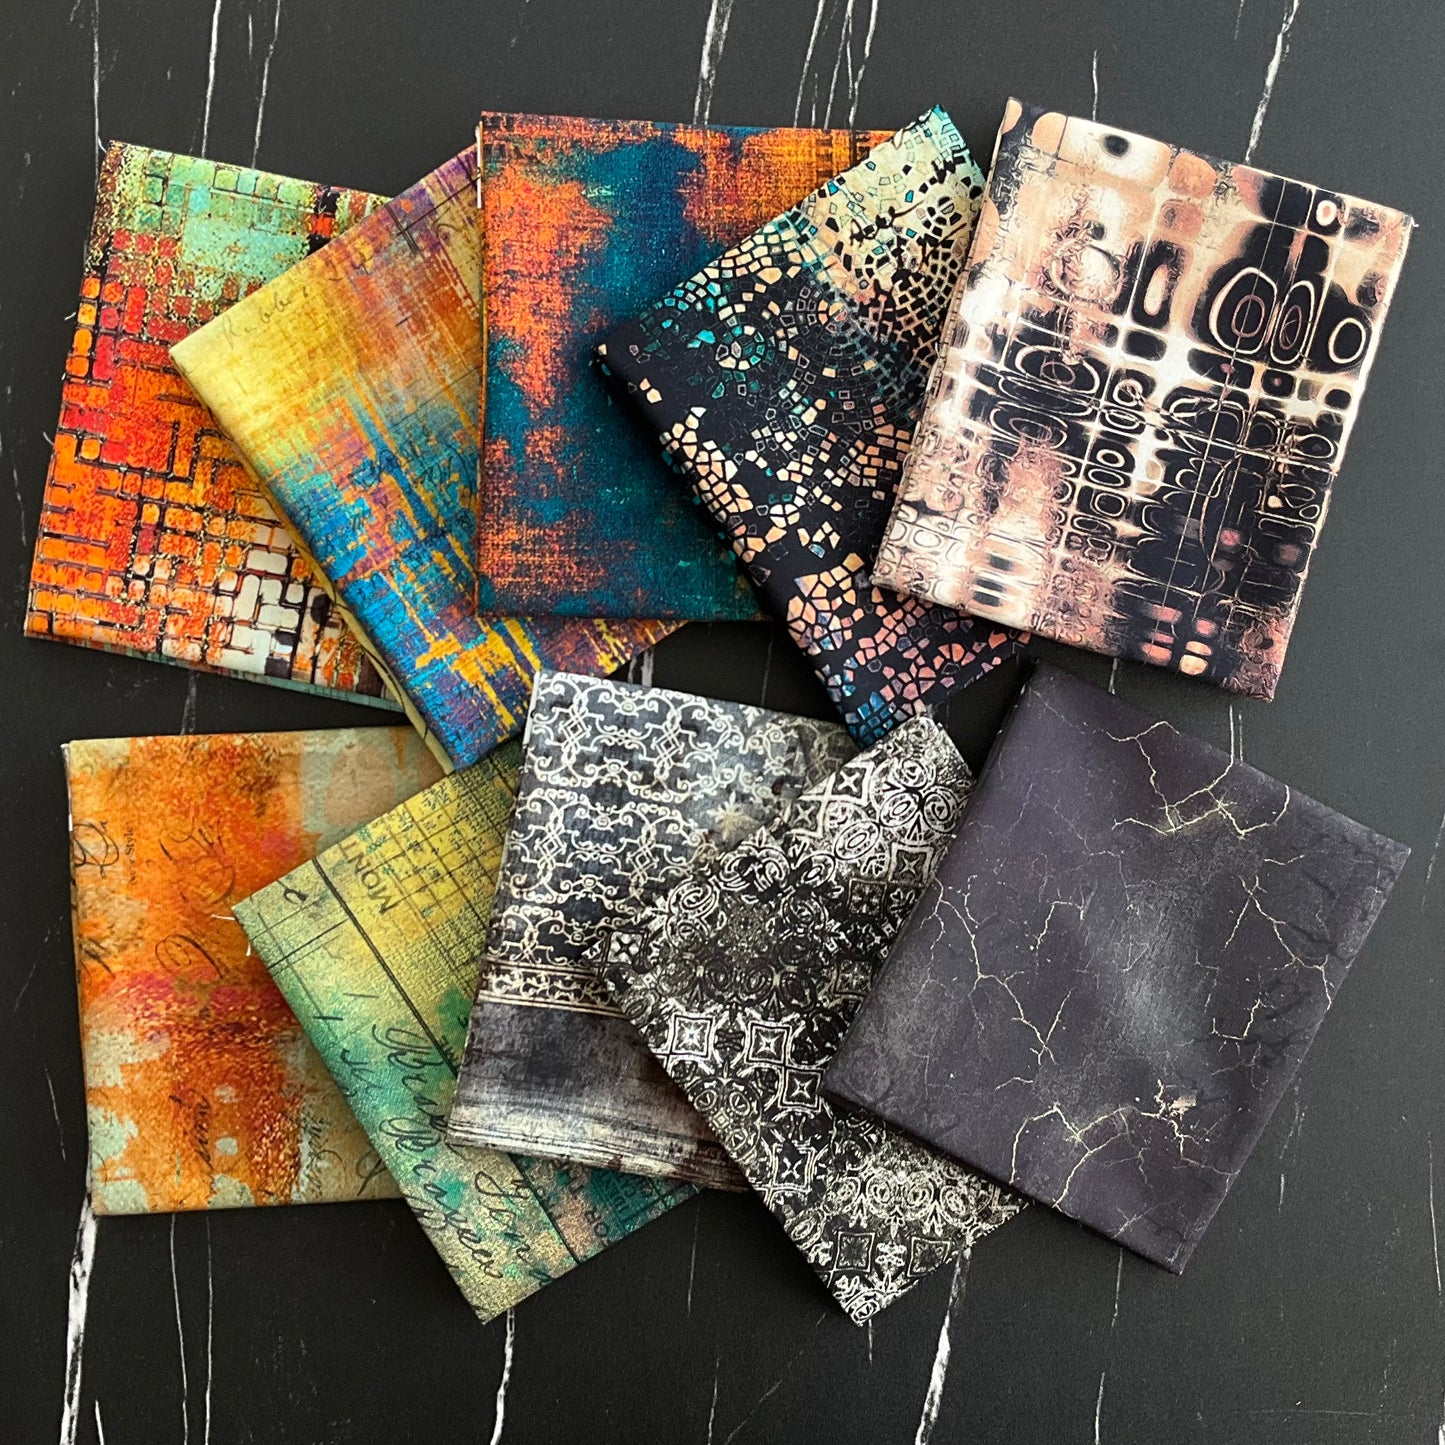 Eclectic Elements par Tim Holtz - Spark Pack Quilt Kit avec Abandoned - 4 options de motifs